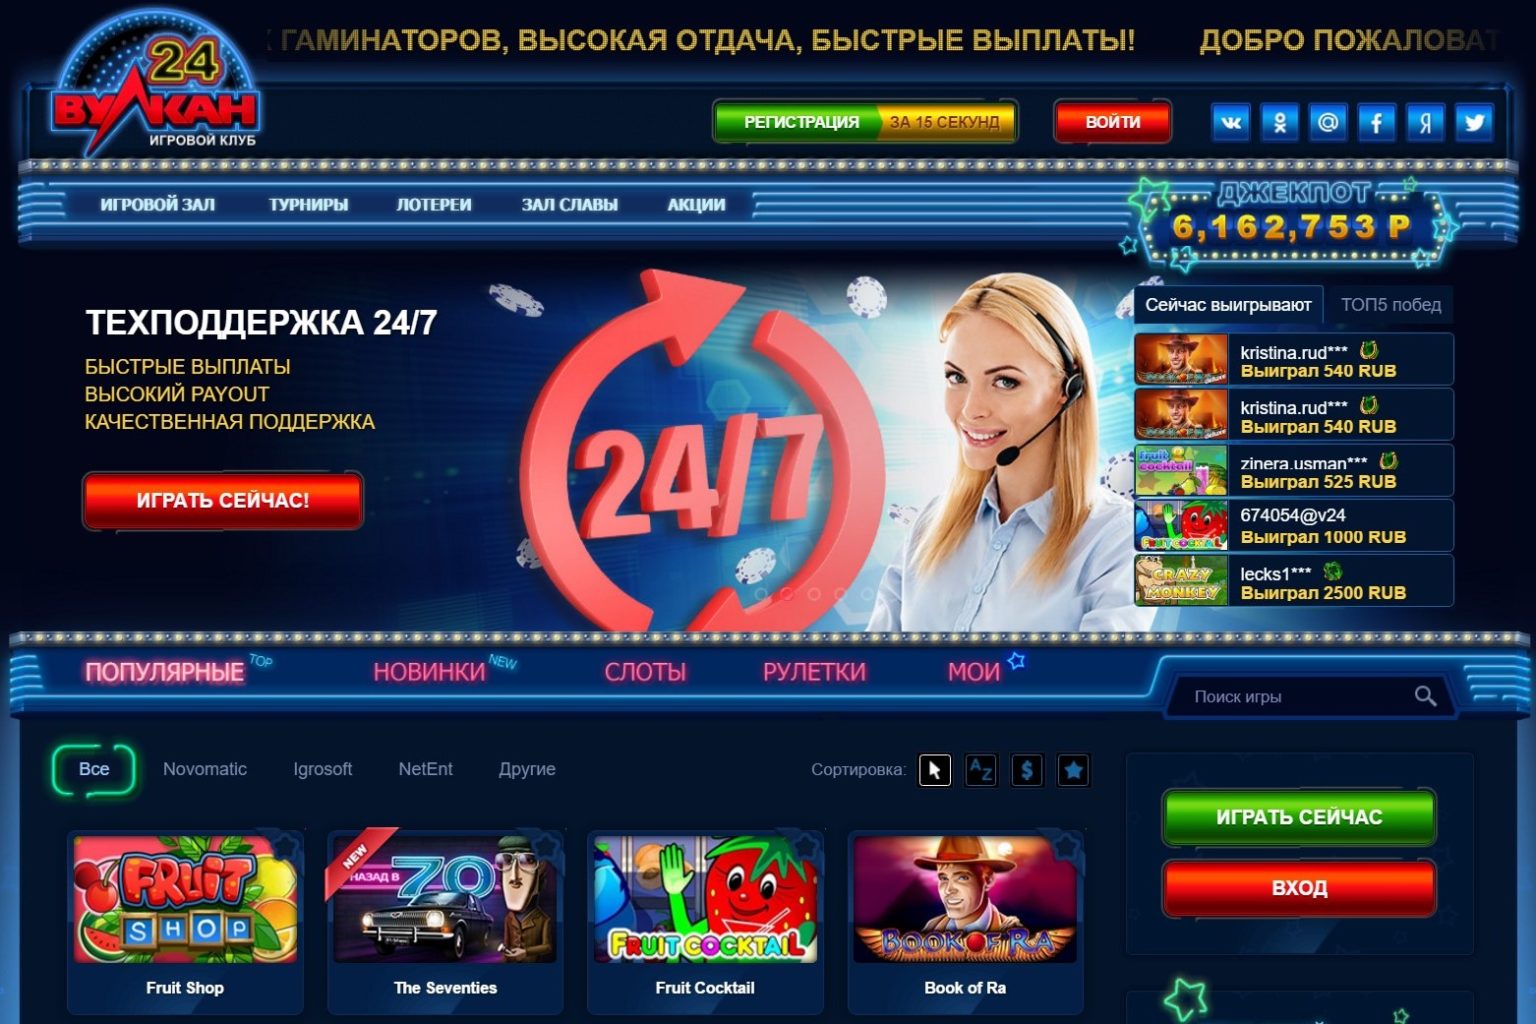 top-casino-online.bitbucket.io: Отзывы о Казино вулкан - Первый независимый сайт отзывов России